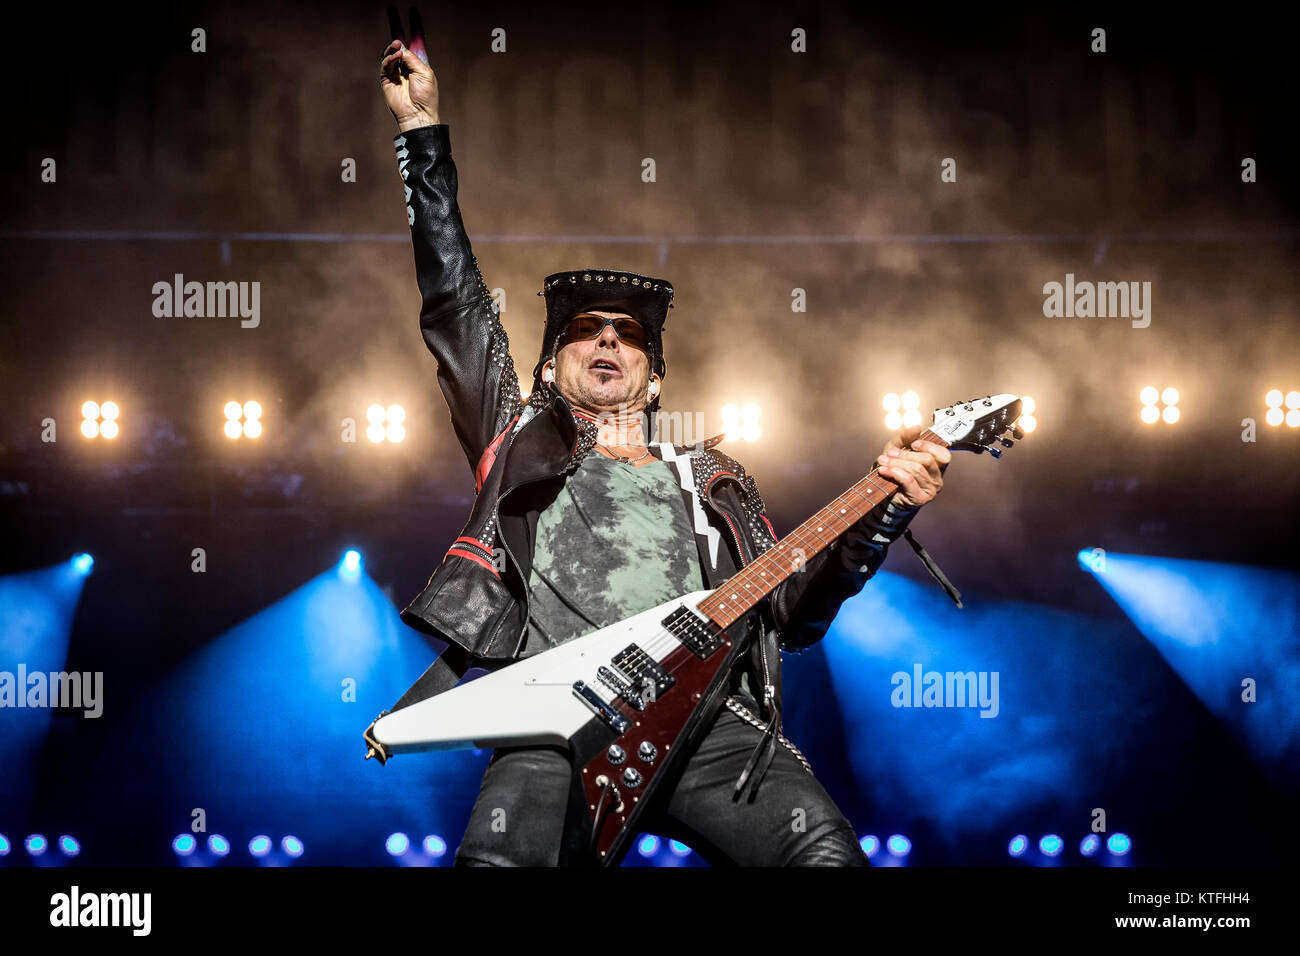 L'della rock band tedesca Scorpions esegue un concerto dal vivo presso la musica svedese festival Sweden Rock Festival 2017. Qui il chitarrista Rudolf Schenker è visto dal vivo sul palco. La Svezia, 09/06 2017. Foto Stock